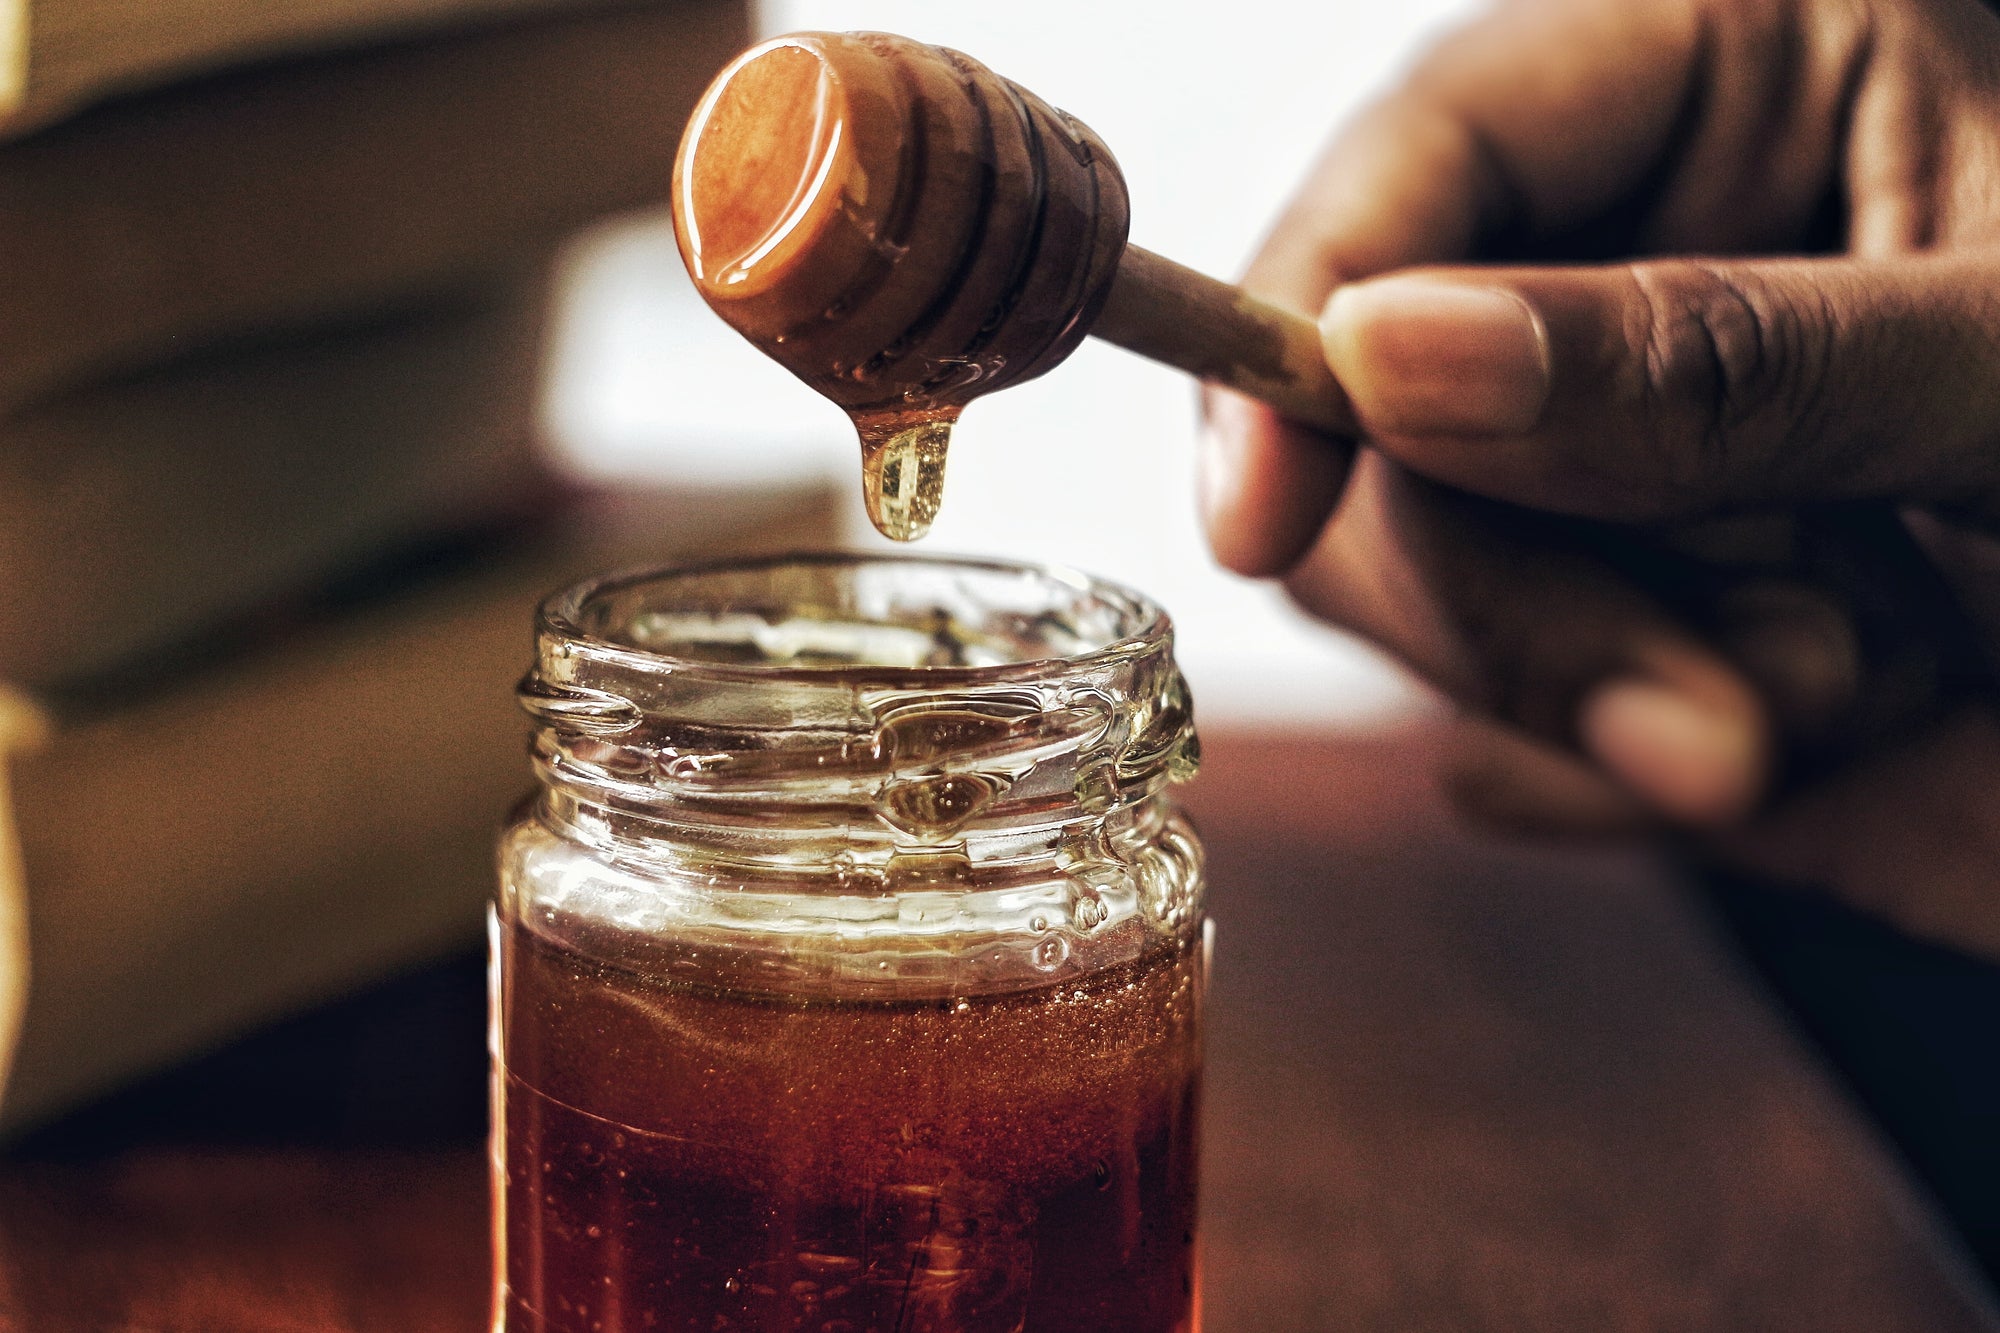 manuka honey bottle with hand